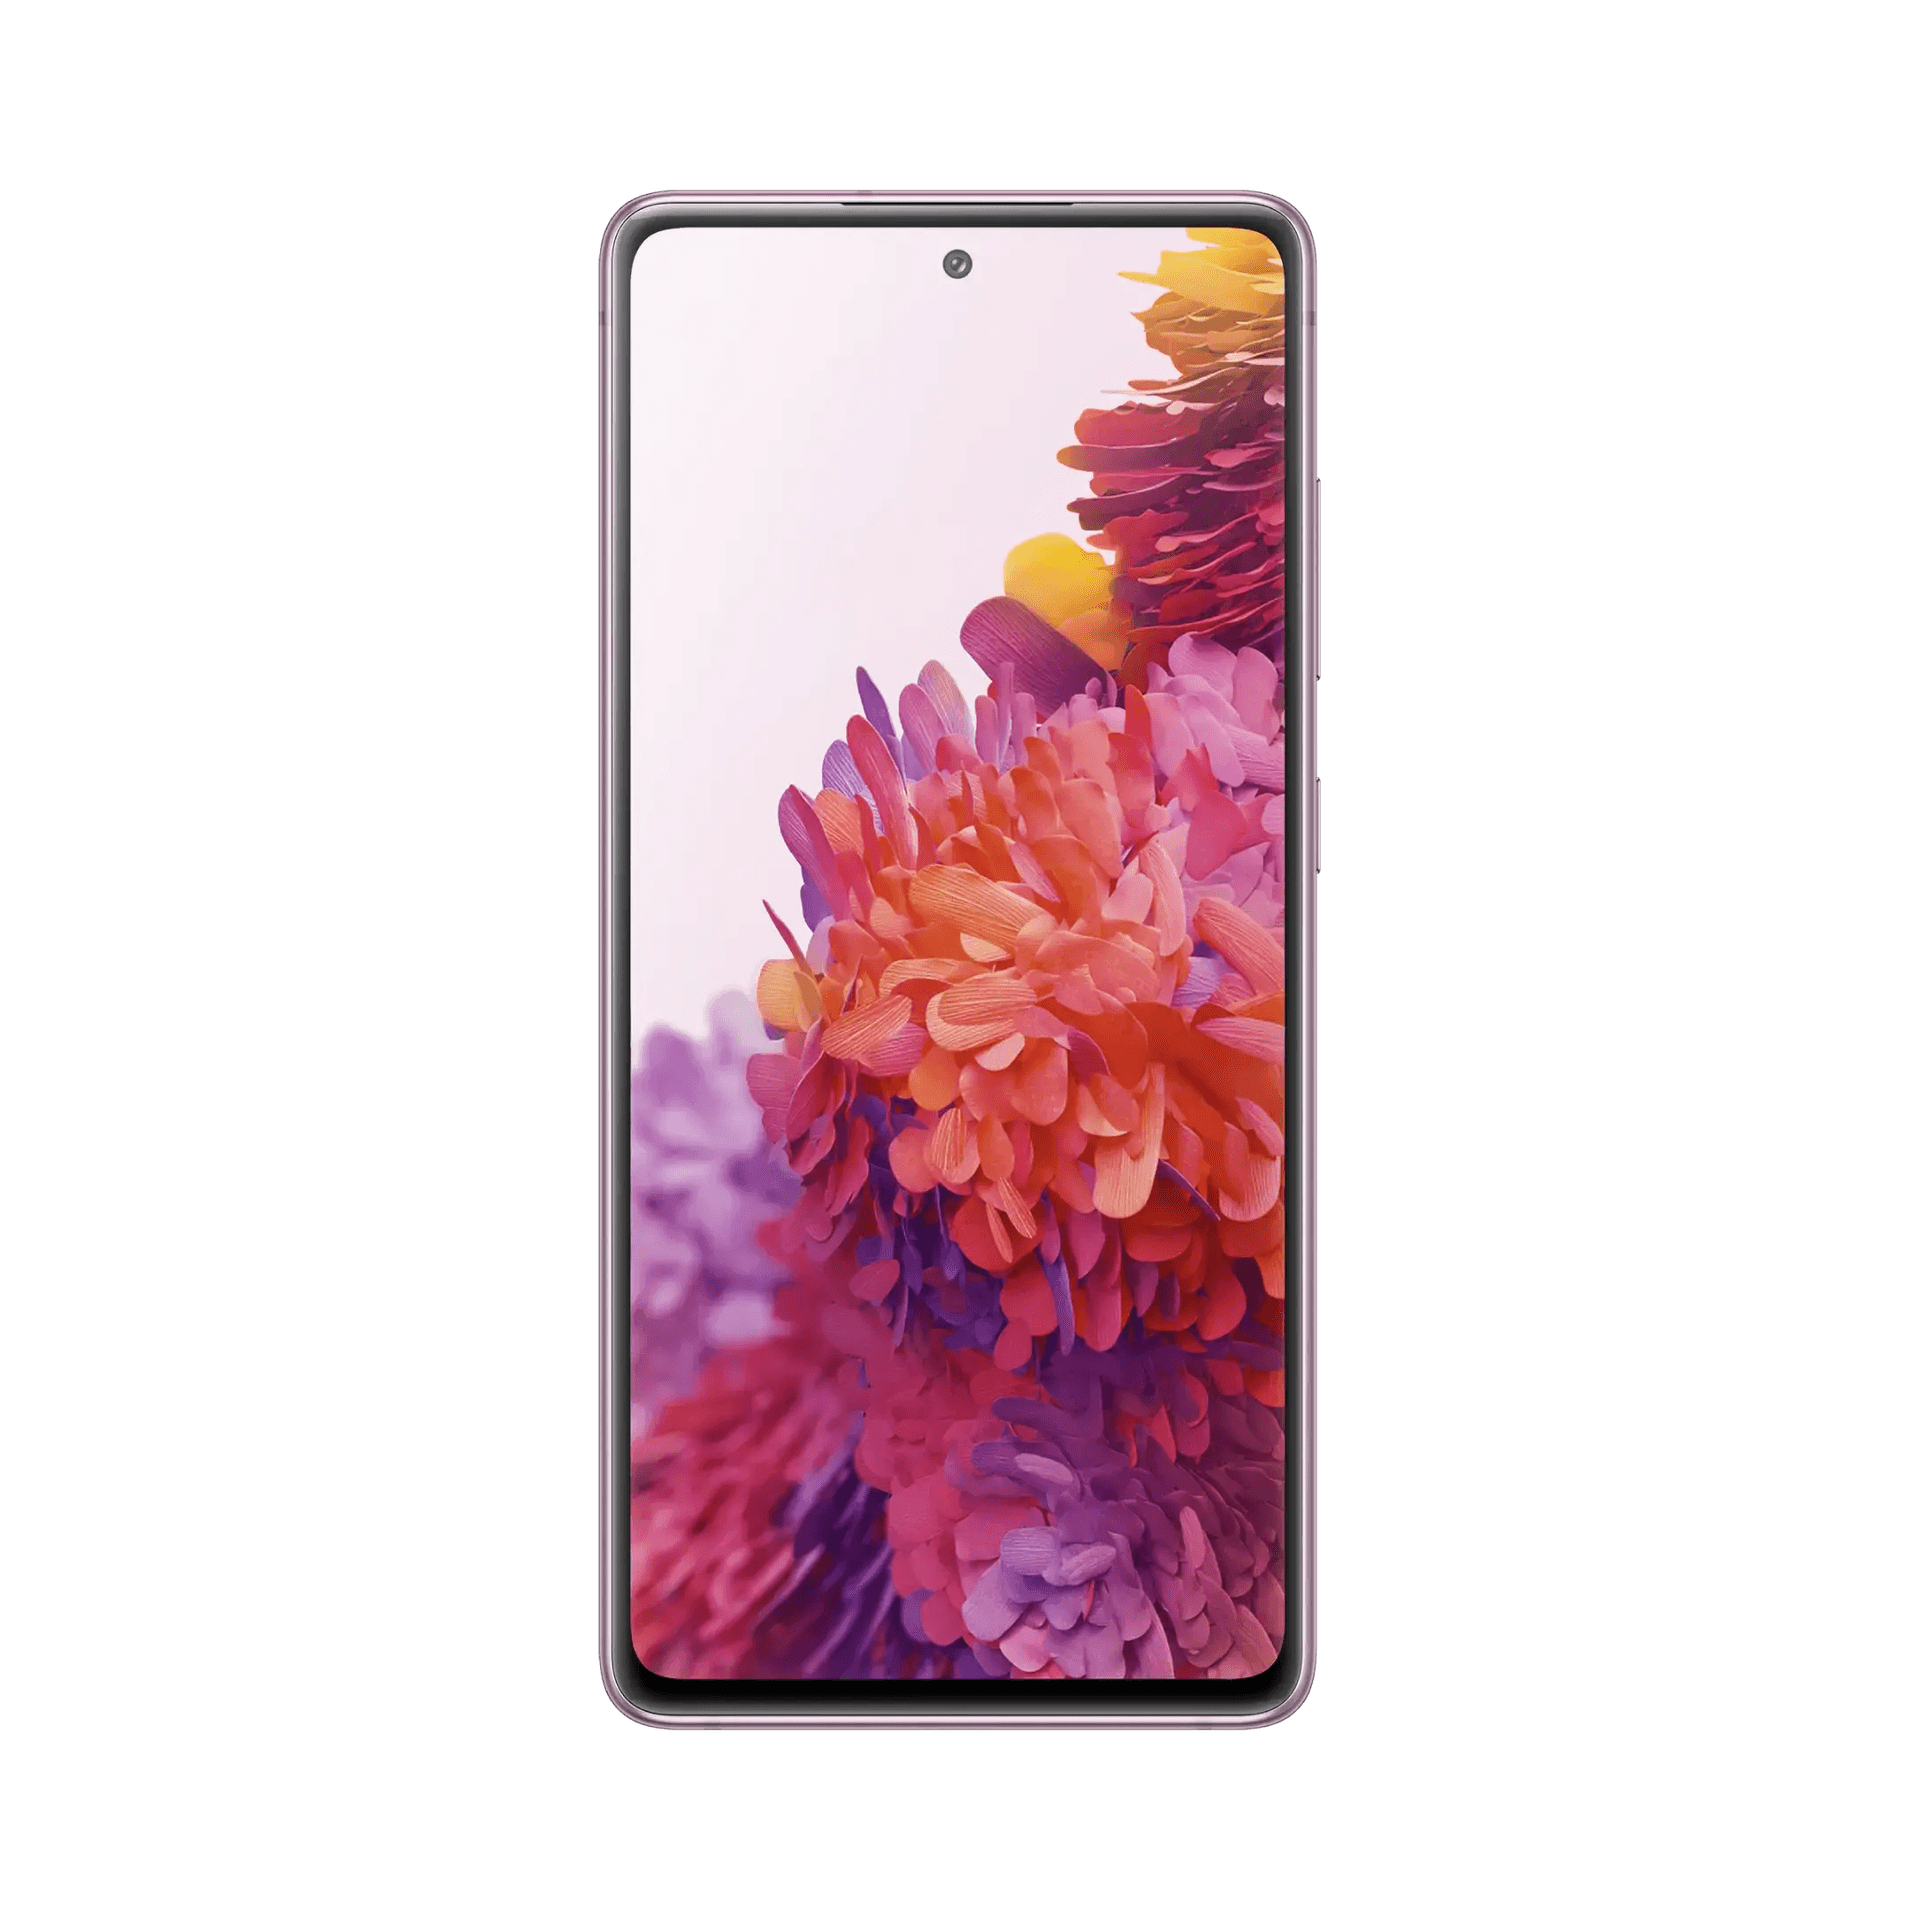 Samsung Galaxy S20 fe - 256 GB - Bulut Kırmızısı